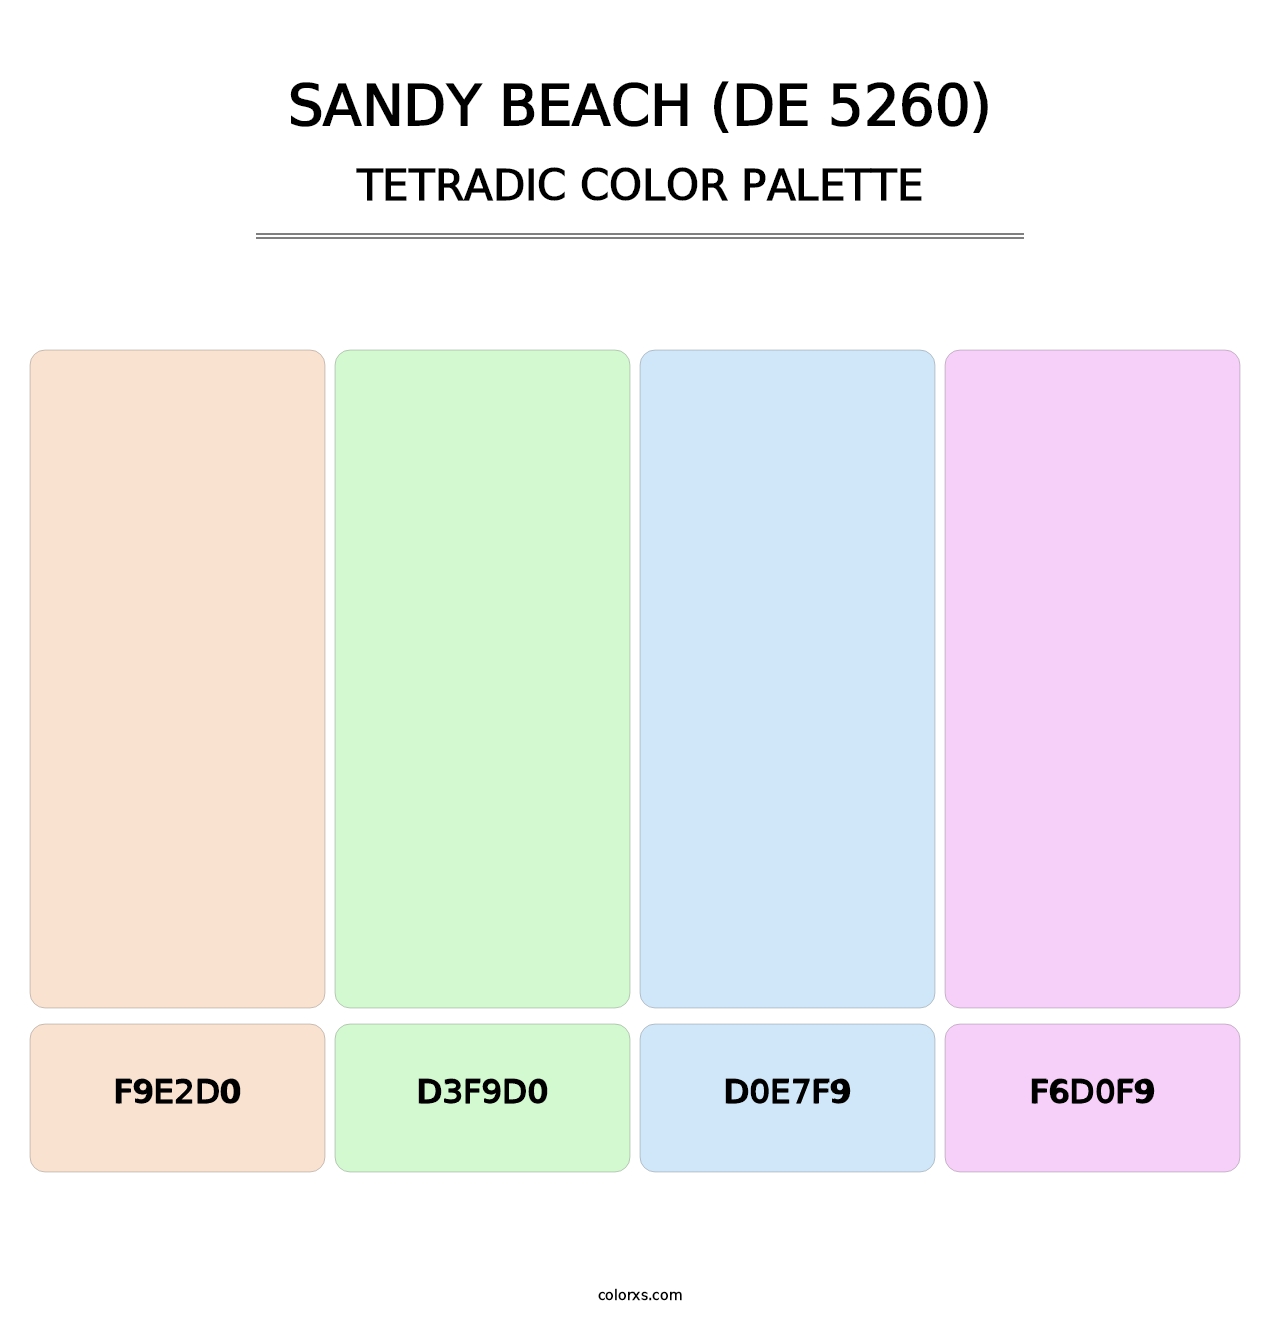 Sandy Beach (DE 5260) - Tetradic Color Palette